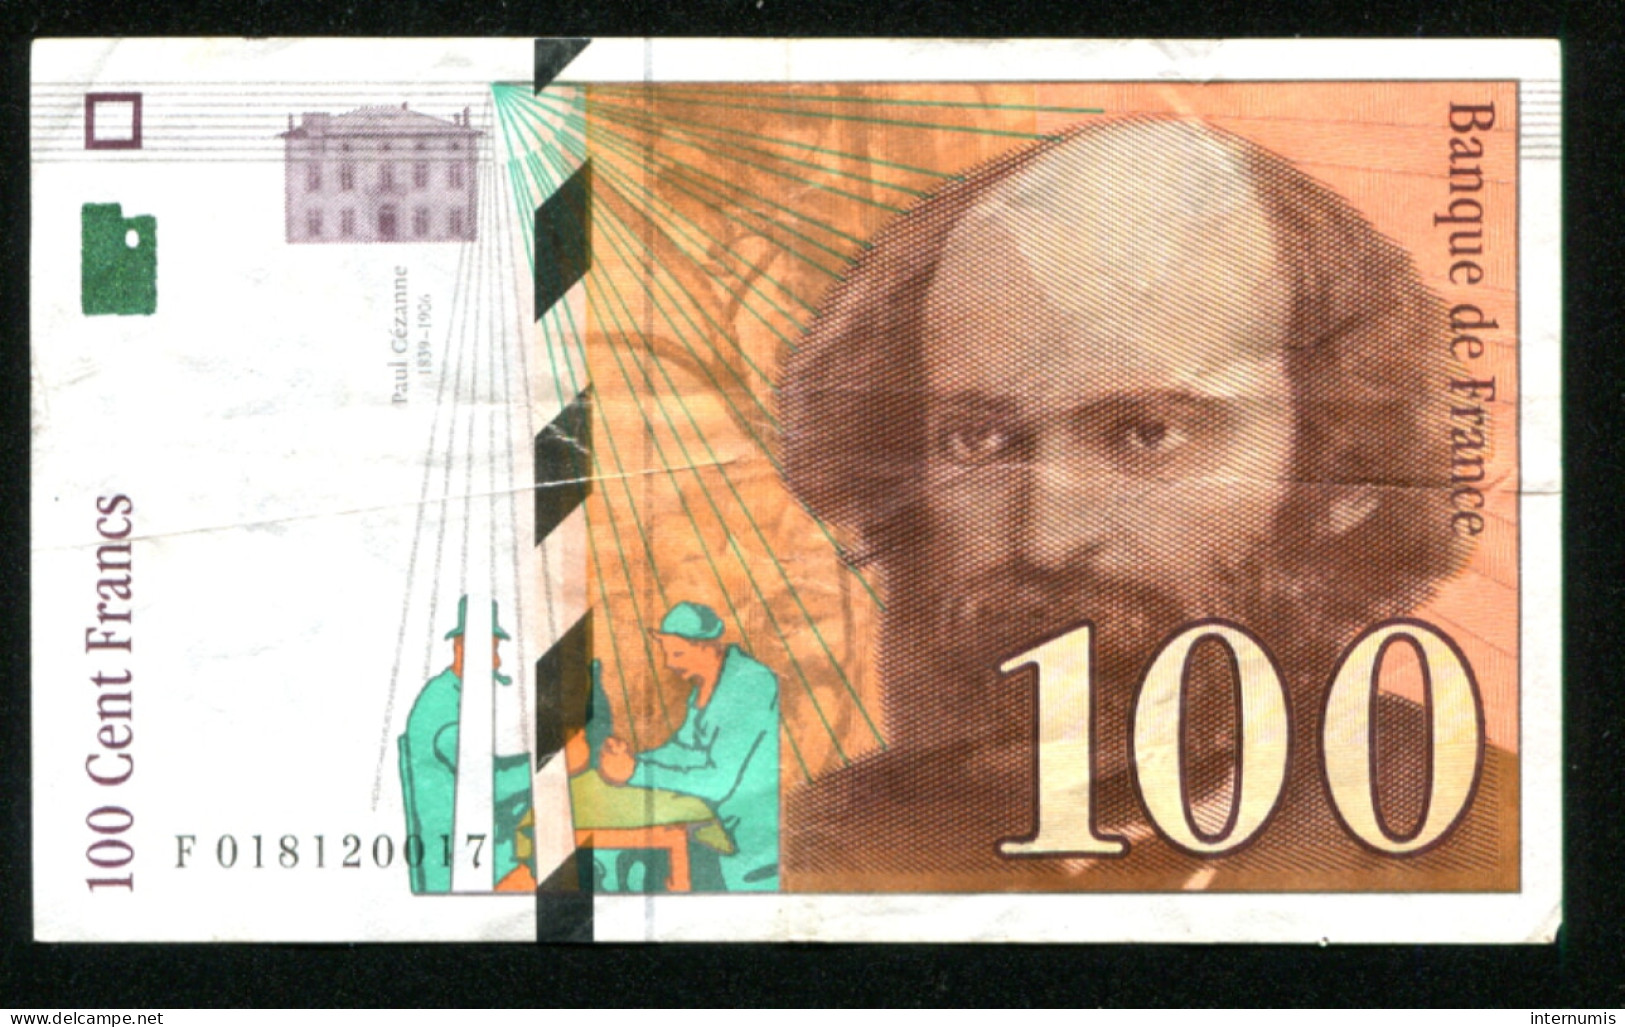 France, 100 Francs, Paul Cézanne, 1997, N° : F018120017, TTB (VF), Pick#158a, F.74.01 - 100 F 1997-1998 ''Cézanne''